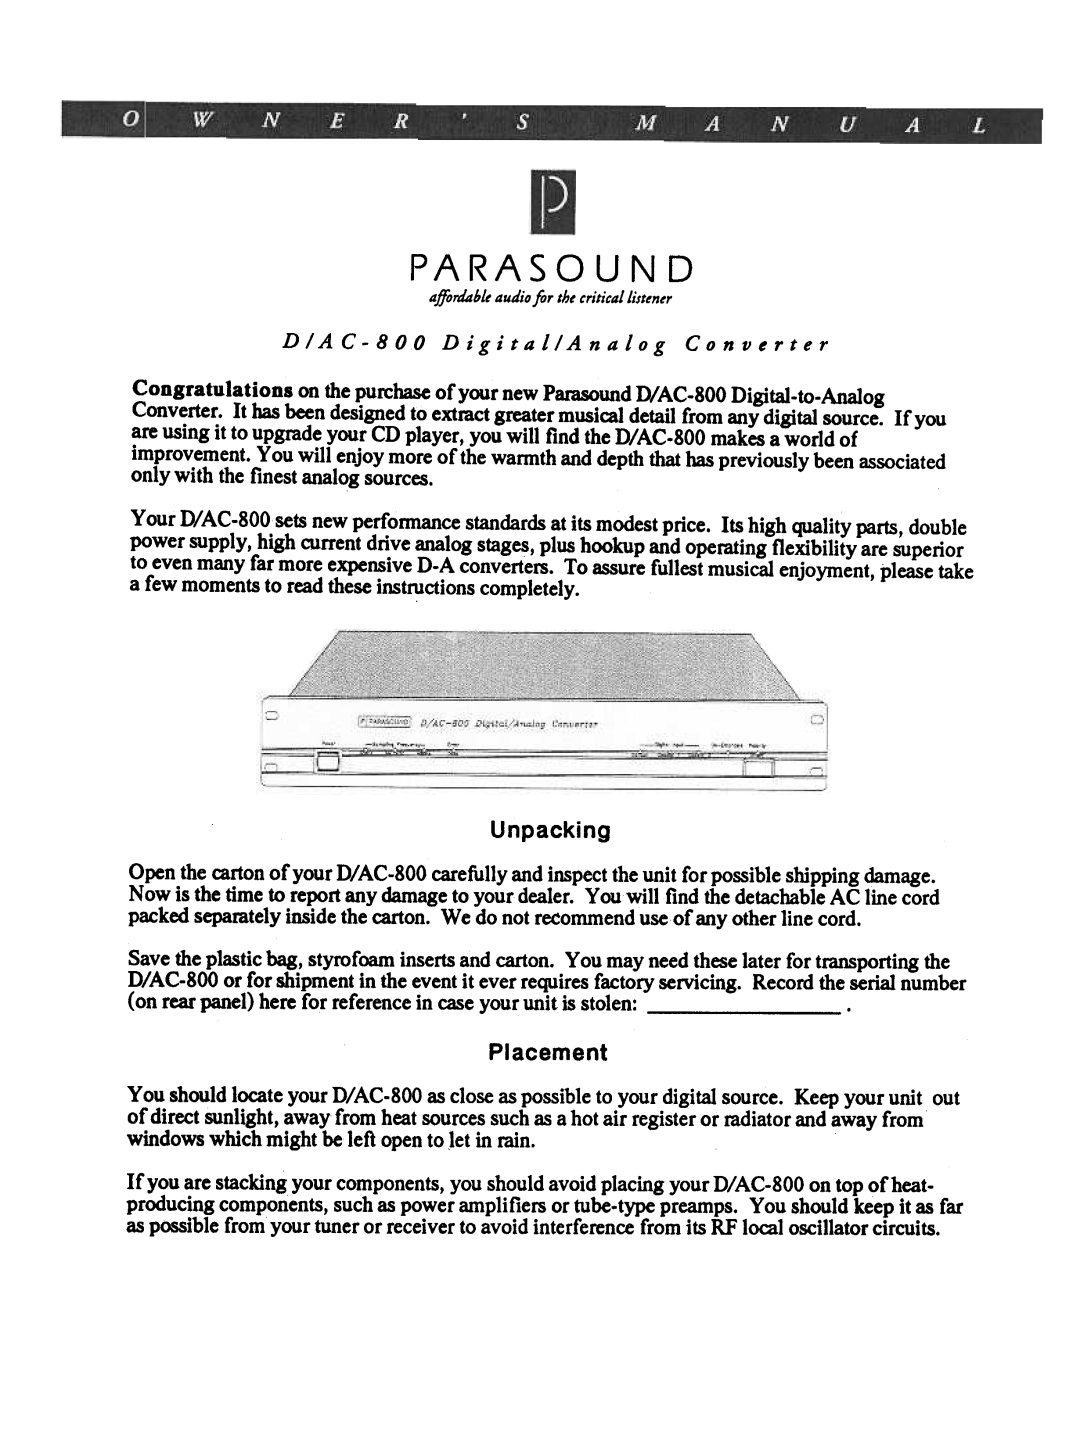 Parasound D/AC-800 manual Placement, Para Sound 